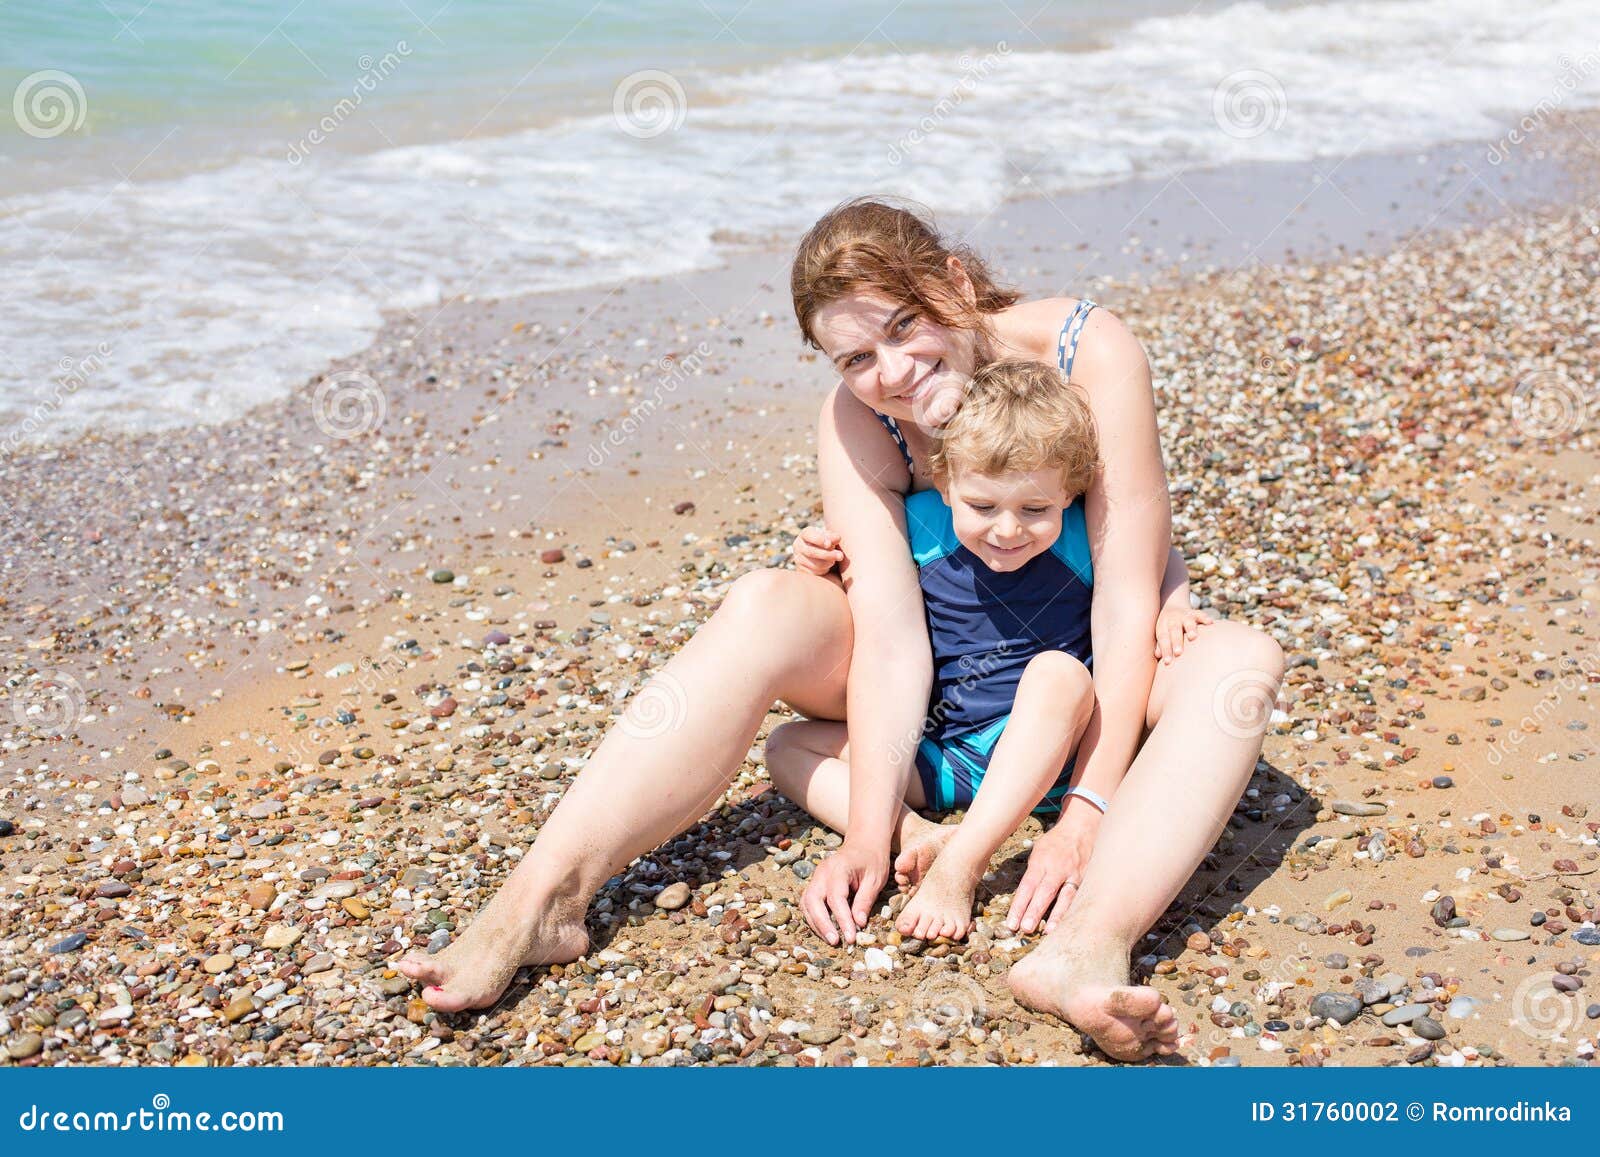 Мамы на нудиском пляже. Мальчишки с мамой пляж. Фотосессия мать и сын на пляже. Фотосессия мама с сыном на пледе. Сын на маме пляжные.